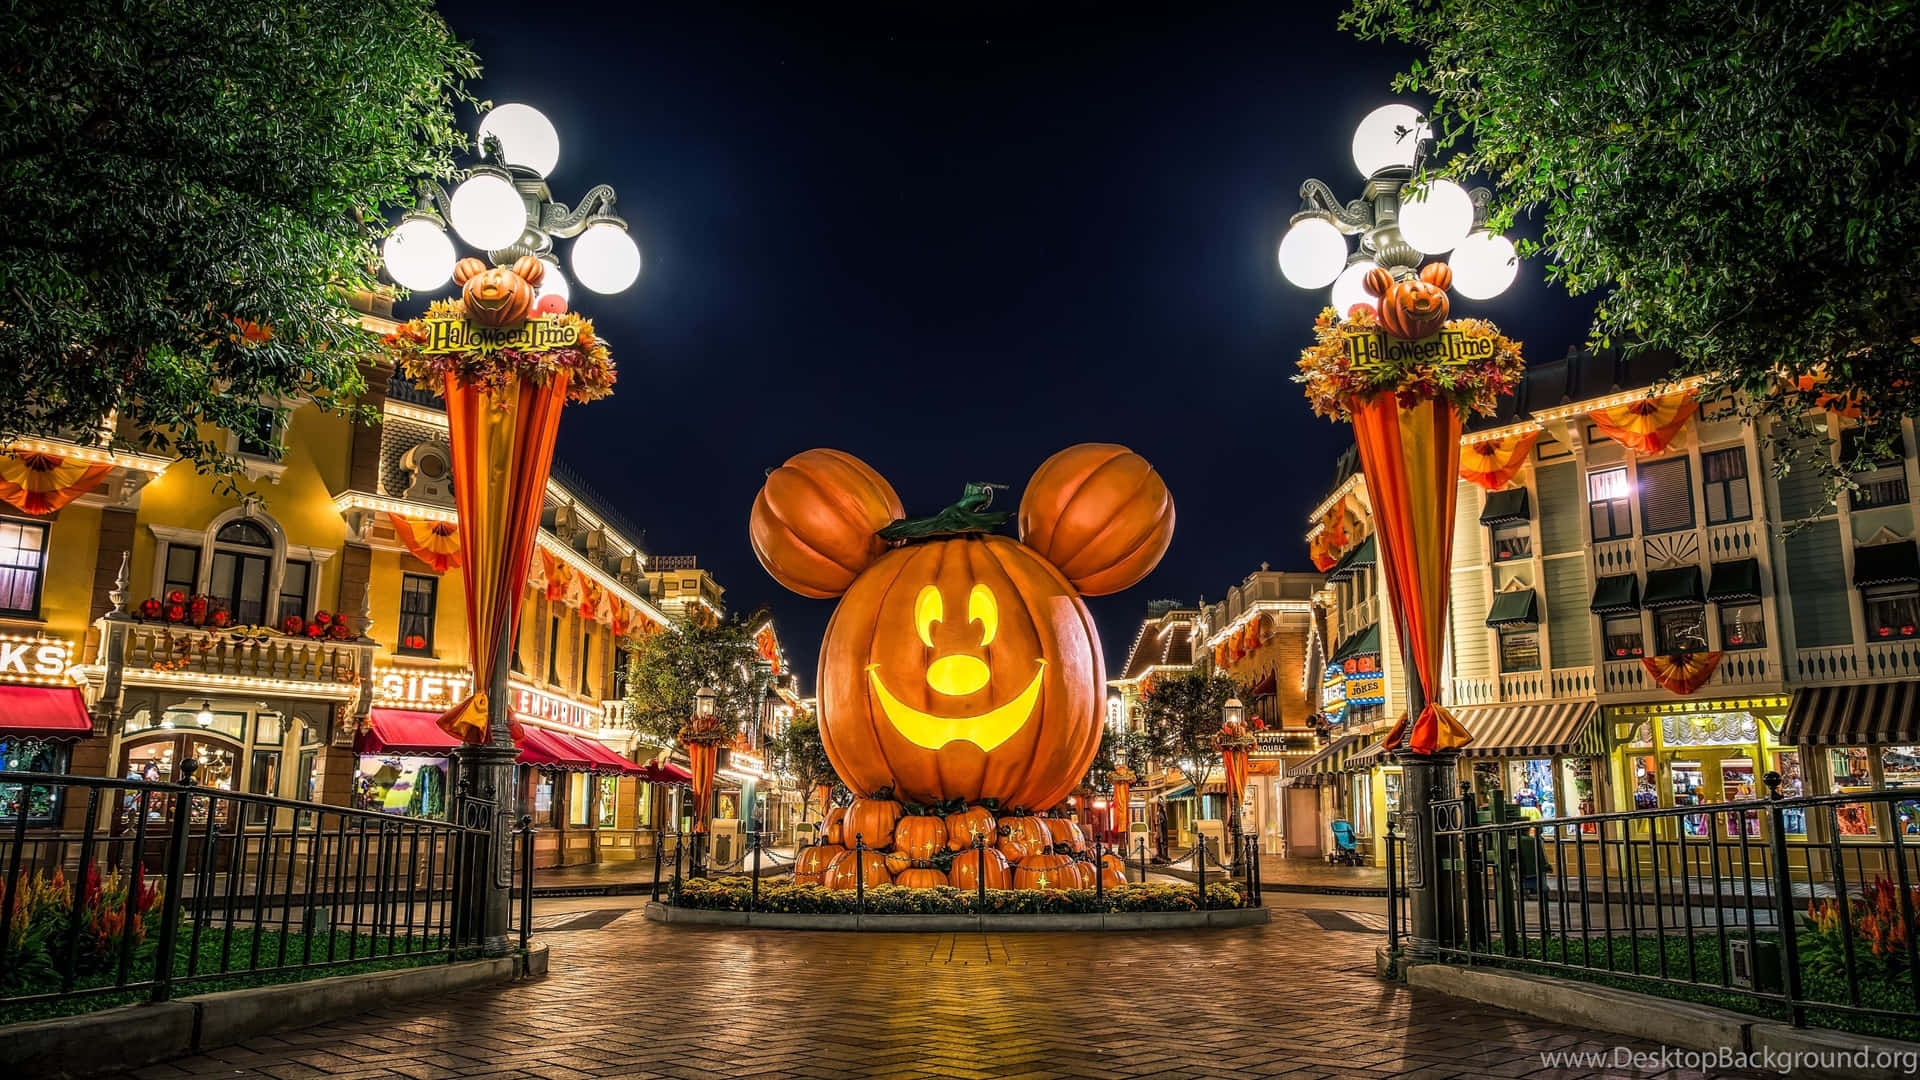 Magiade Halloween De Disney: Mickey, Minnie, Goofy Y Donald Celebran La Temporada Espeluznante.